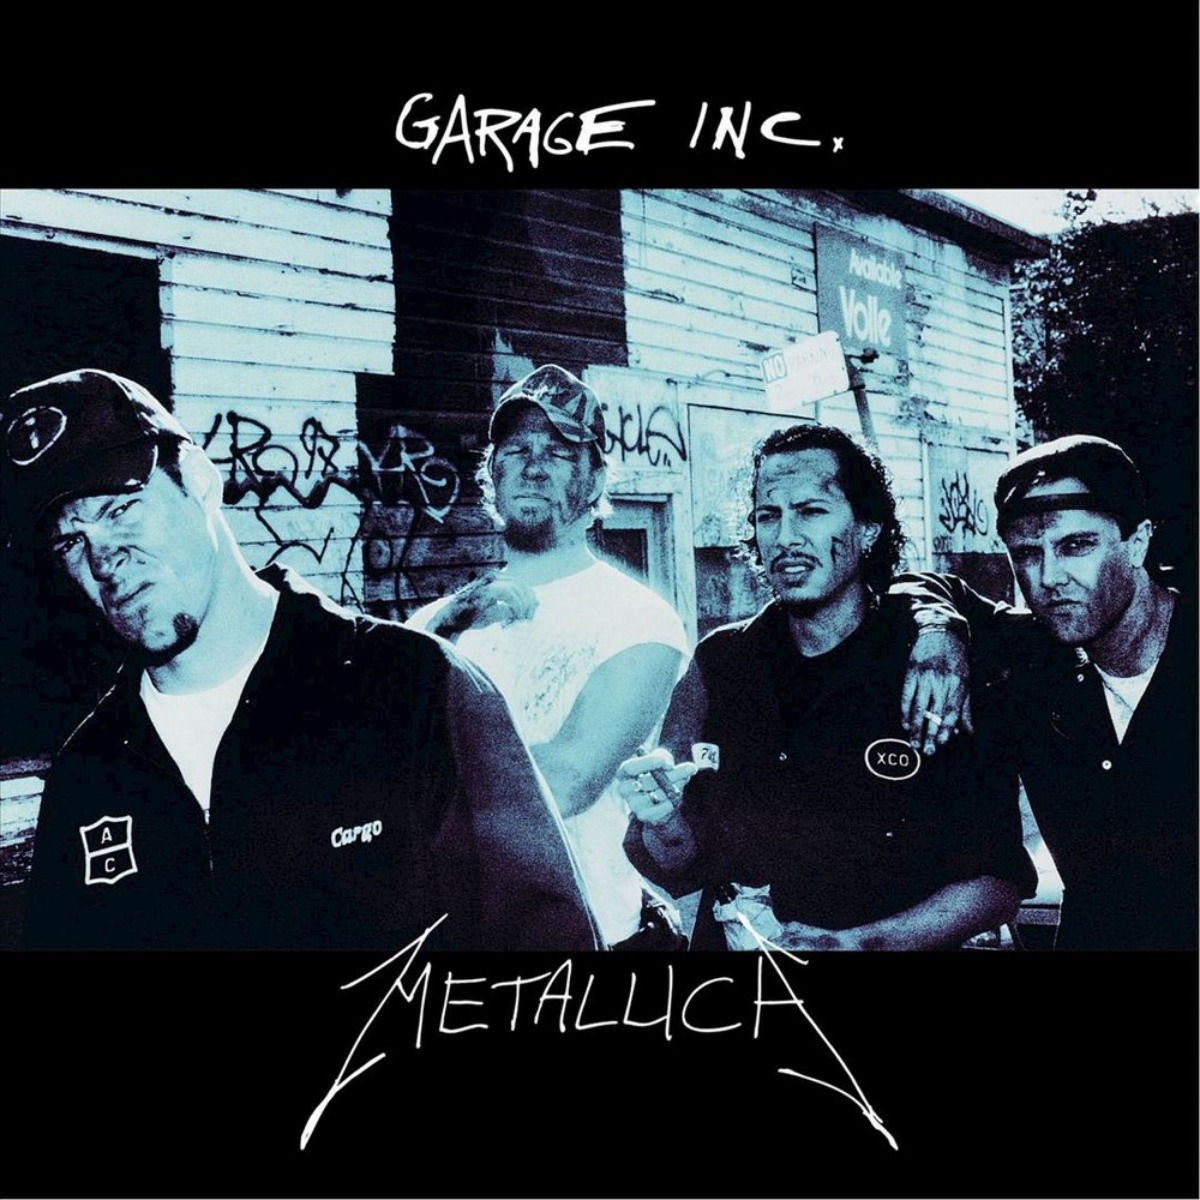 Portada de "Garage Inc." de Metallica